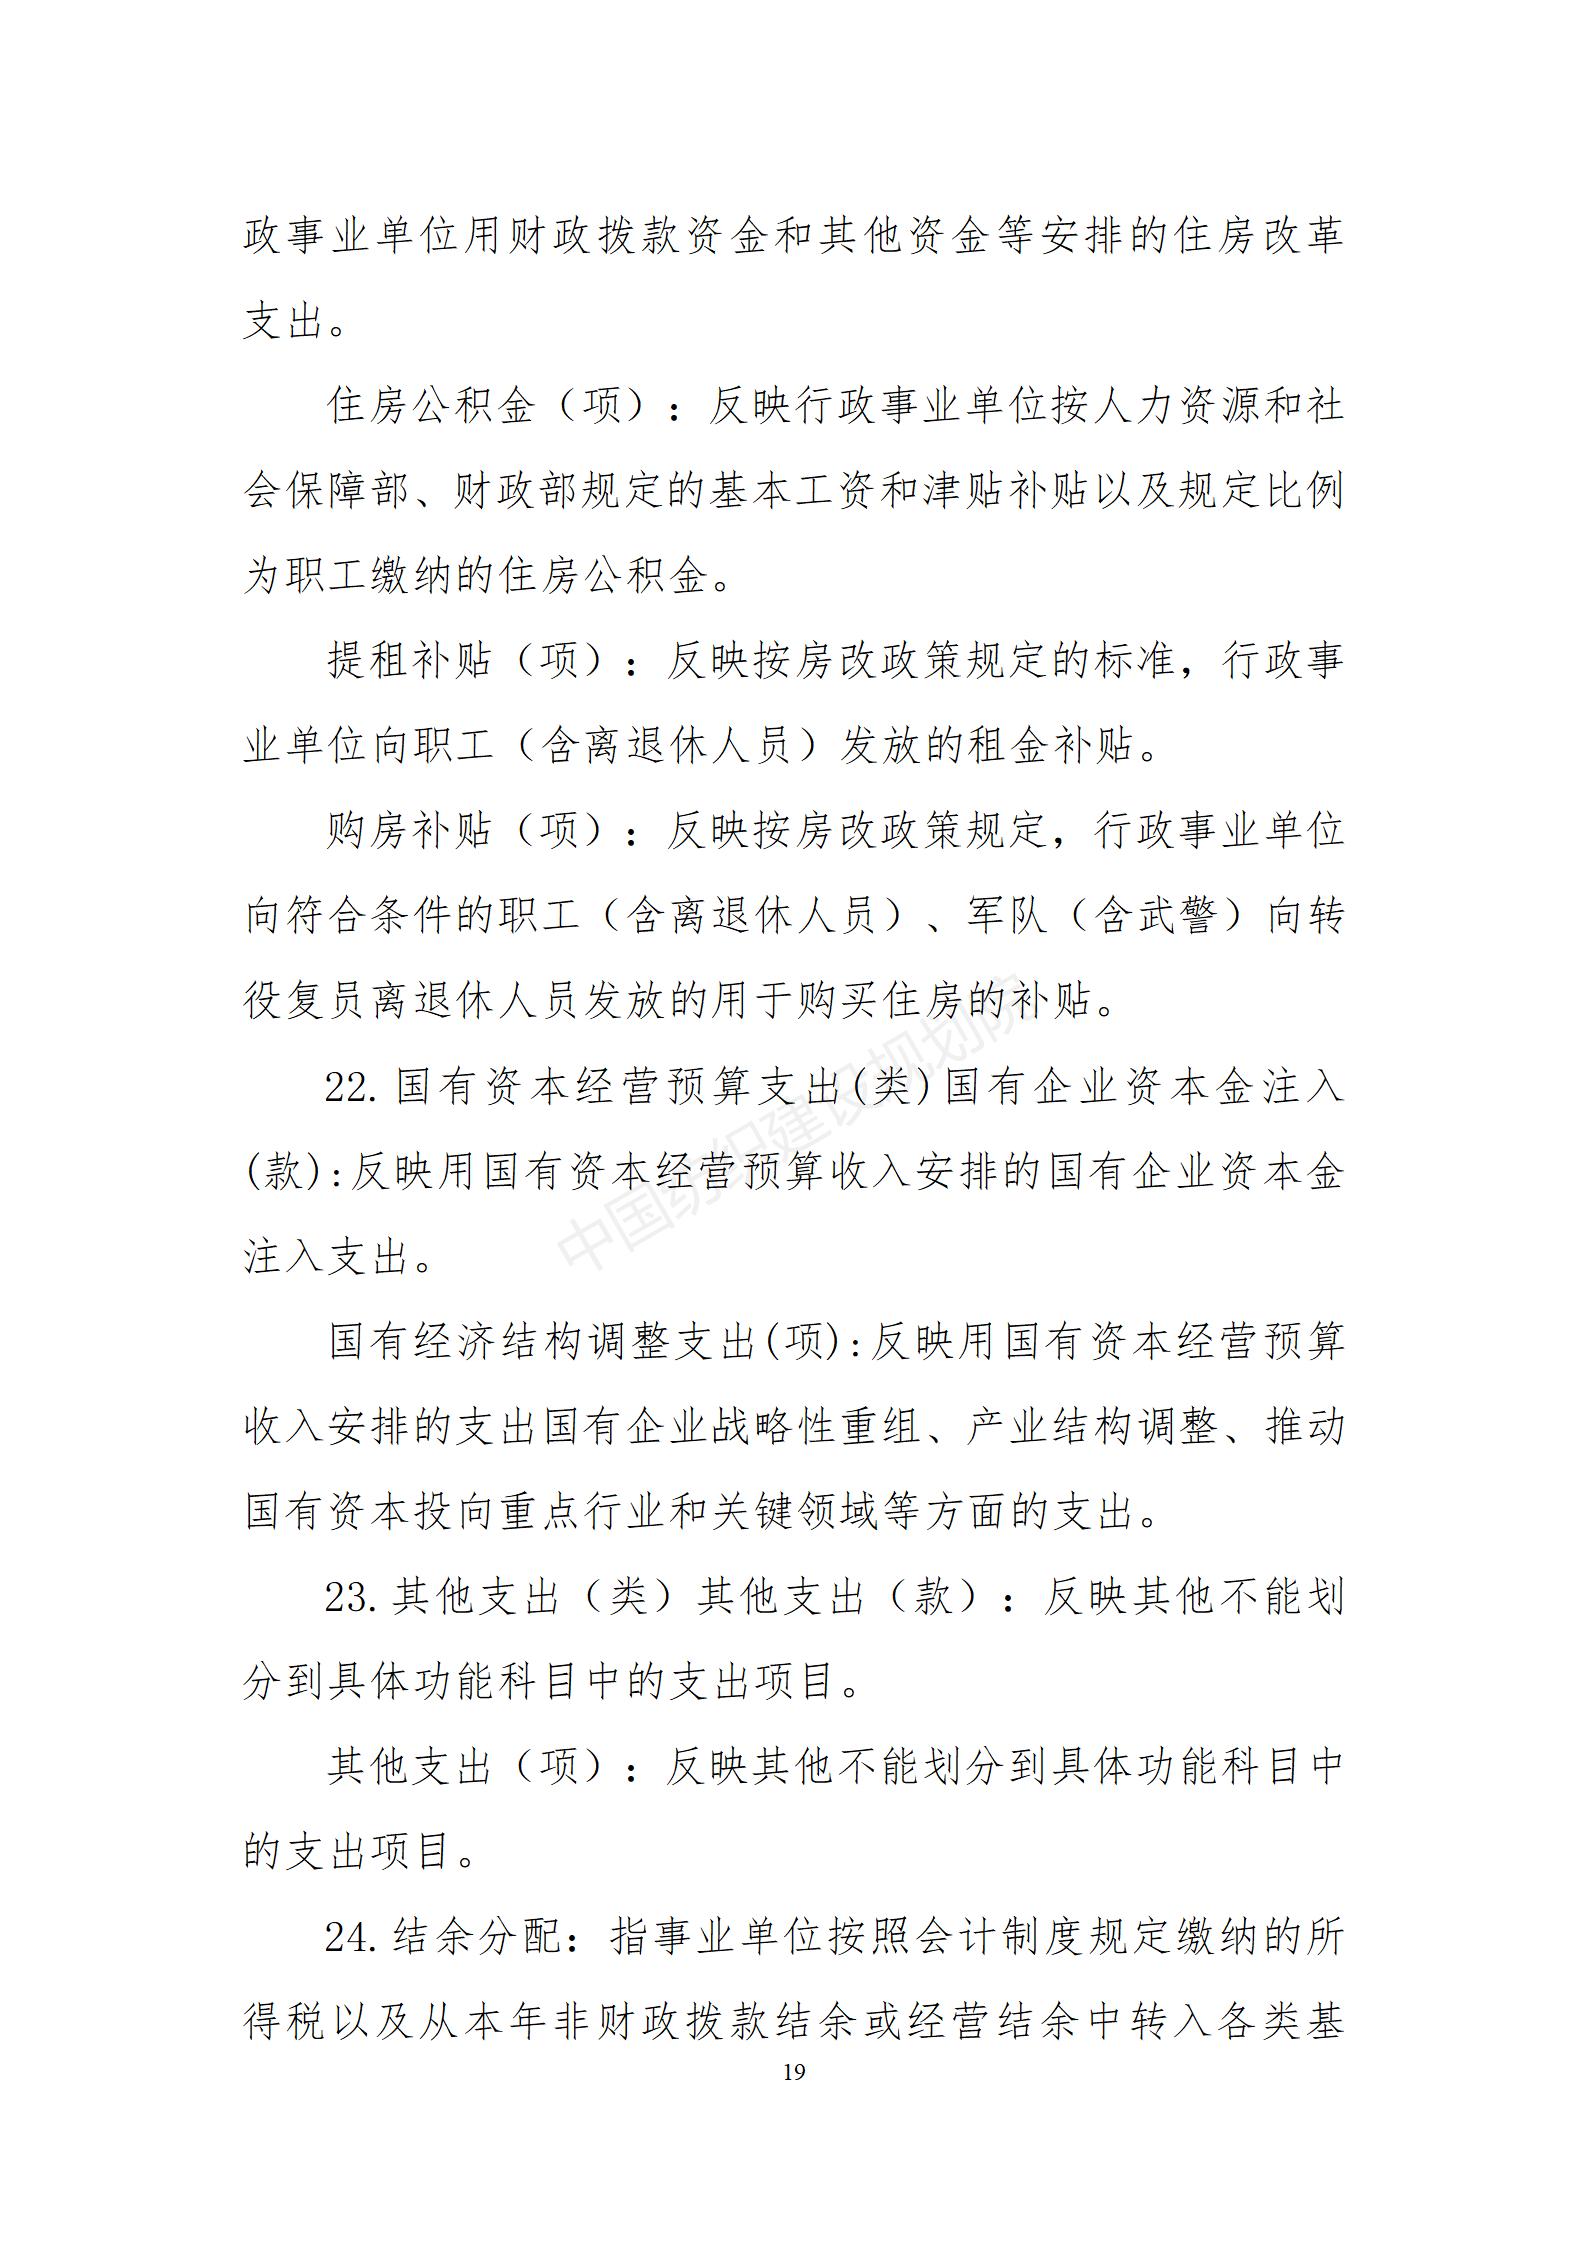 中国纺织建设规划院2021年度部门决算（公开稿）_20